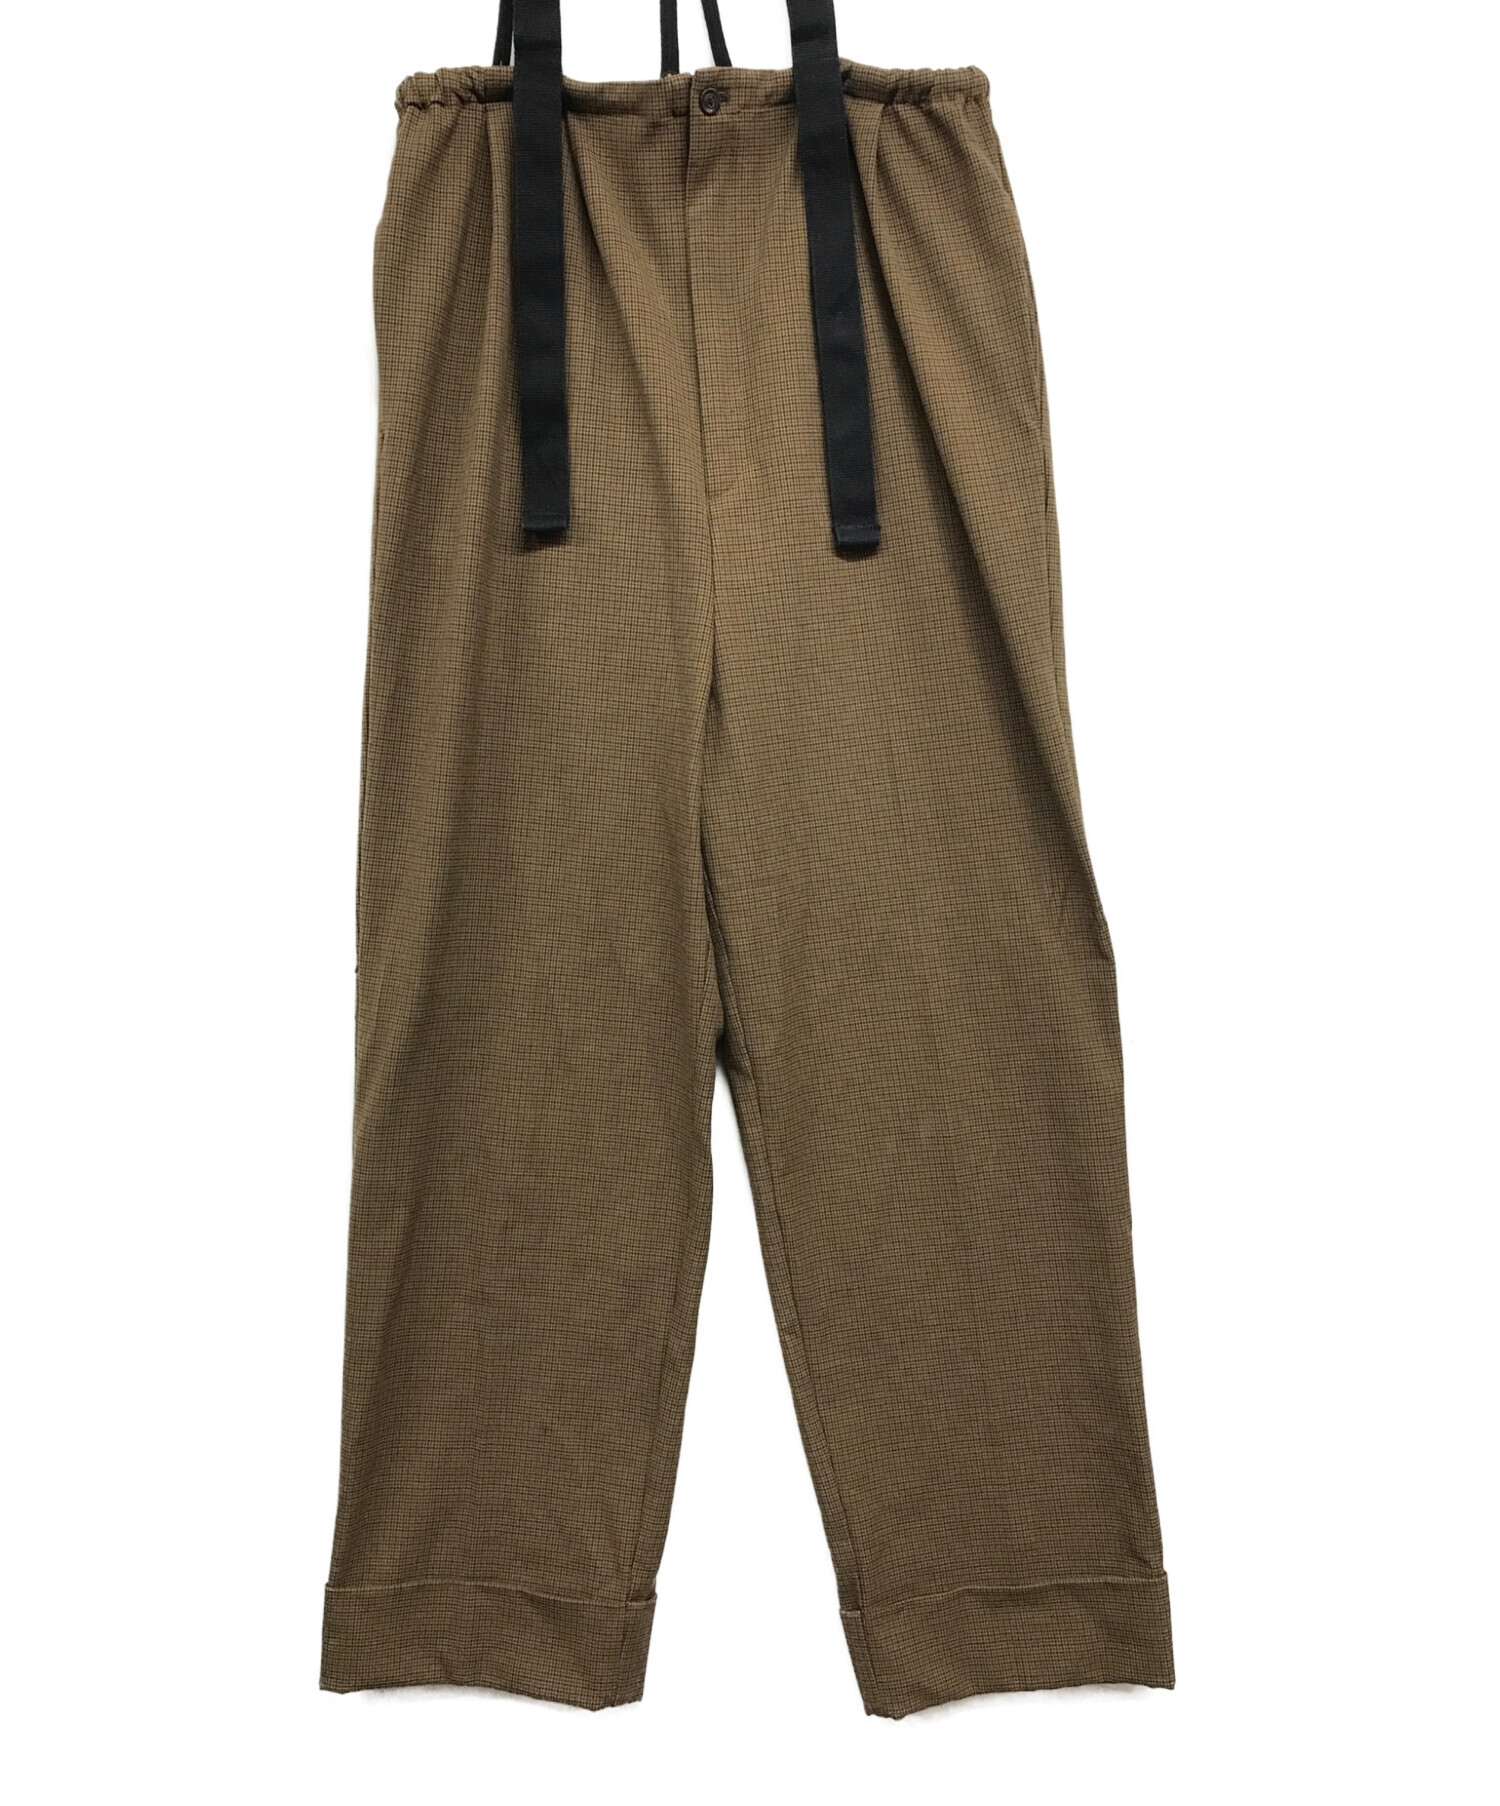 TODAYFUL】Suspenders Highwaist Pants 38No12320711 - www